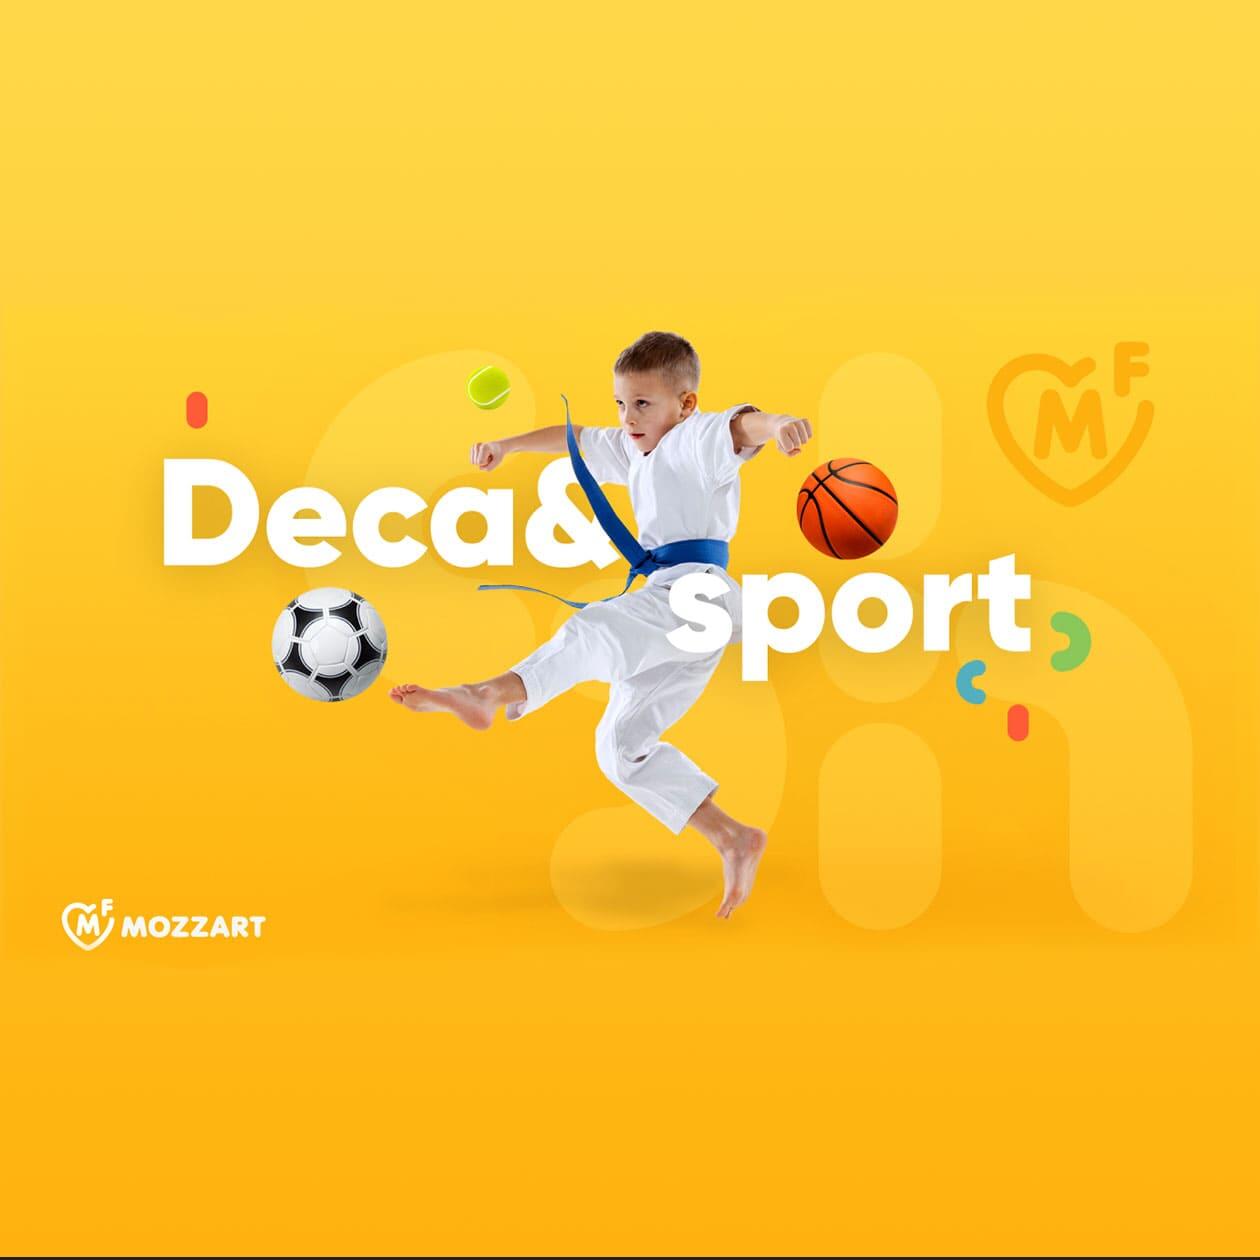 Akcija "Deca&Sport" za zdravo i aktivno detinjstvo uz podršku Mozzart fondacije slika